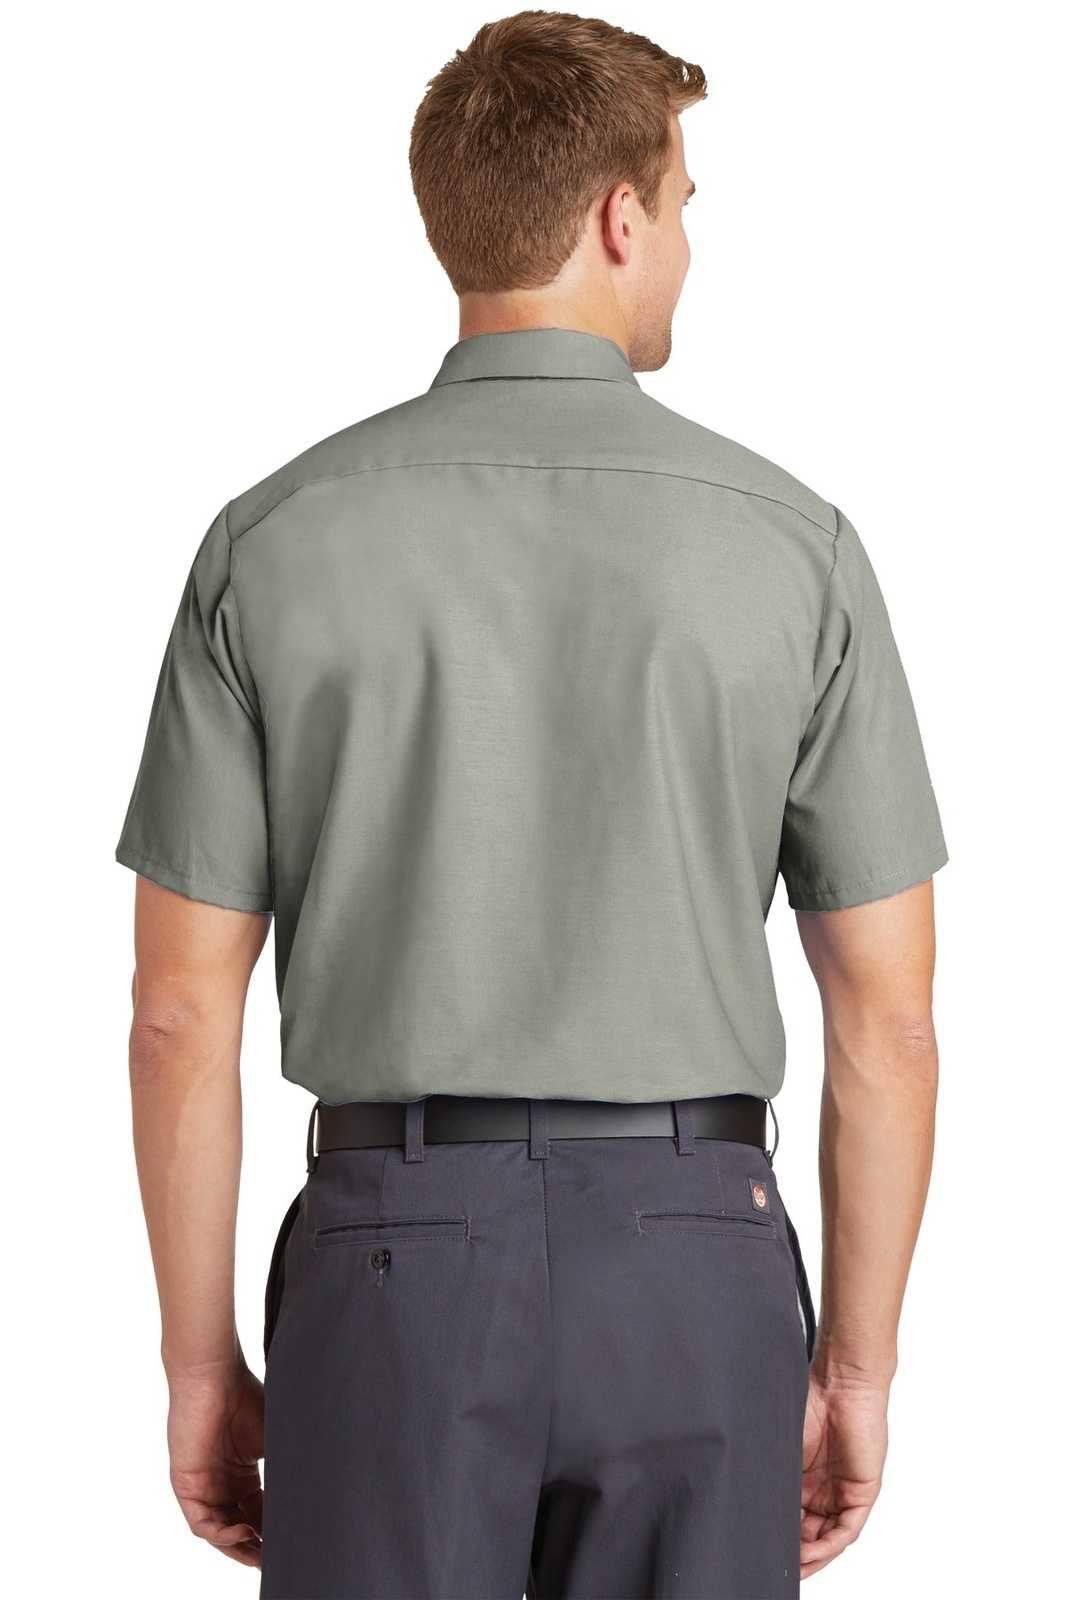 Red Kap SP24 Short Sleeve Industrial Work Shirt - Light Gray - HIT a Double - 1